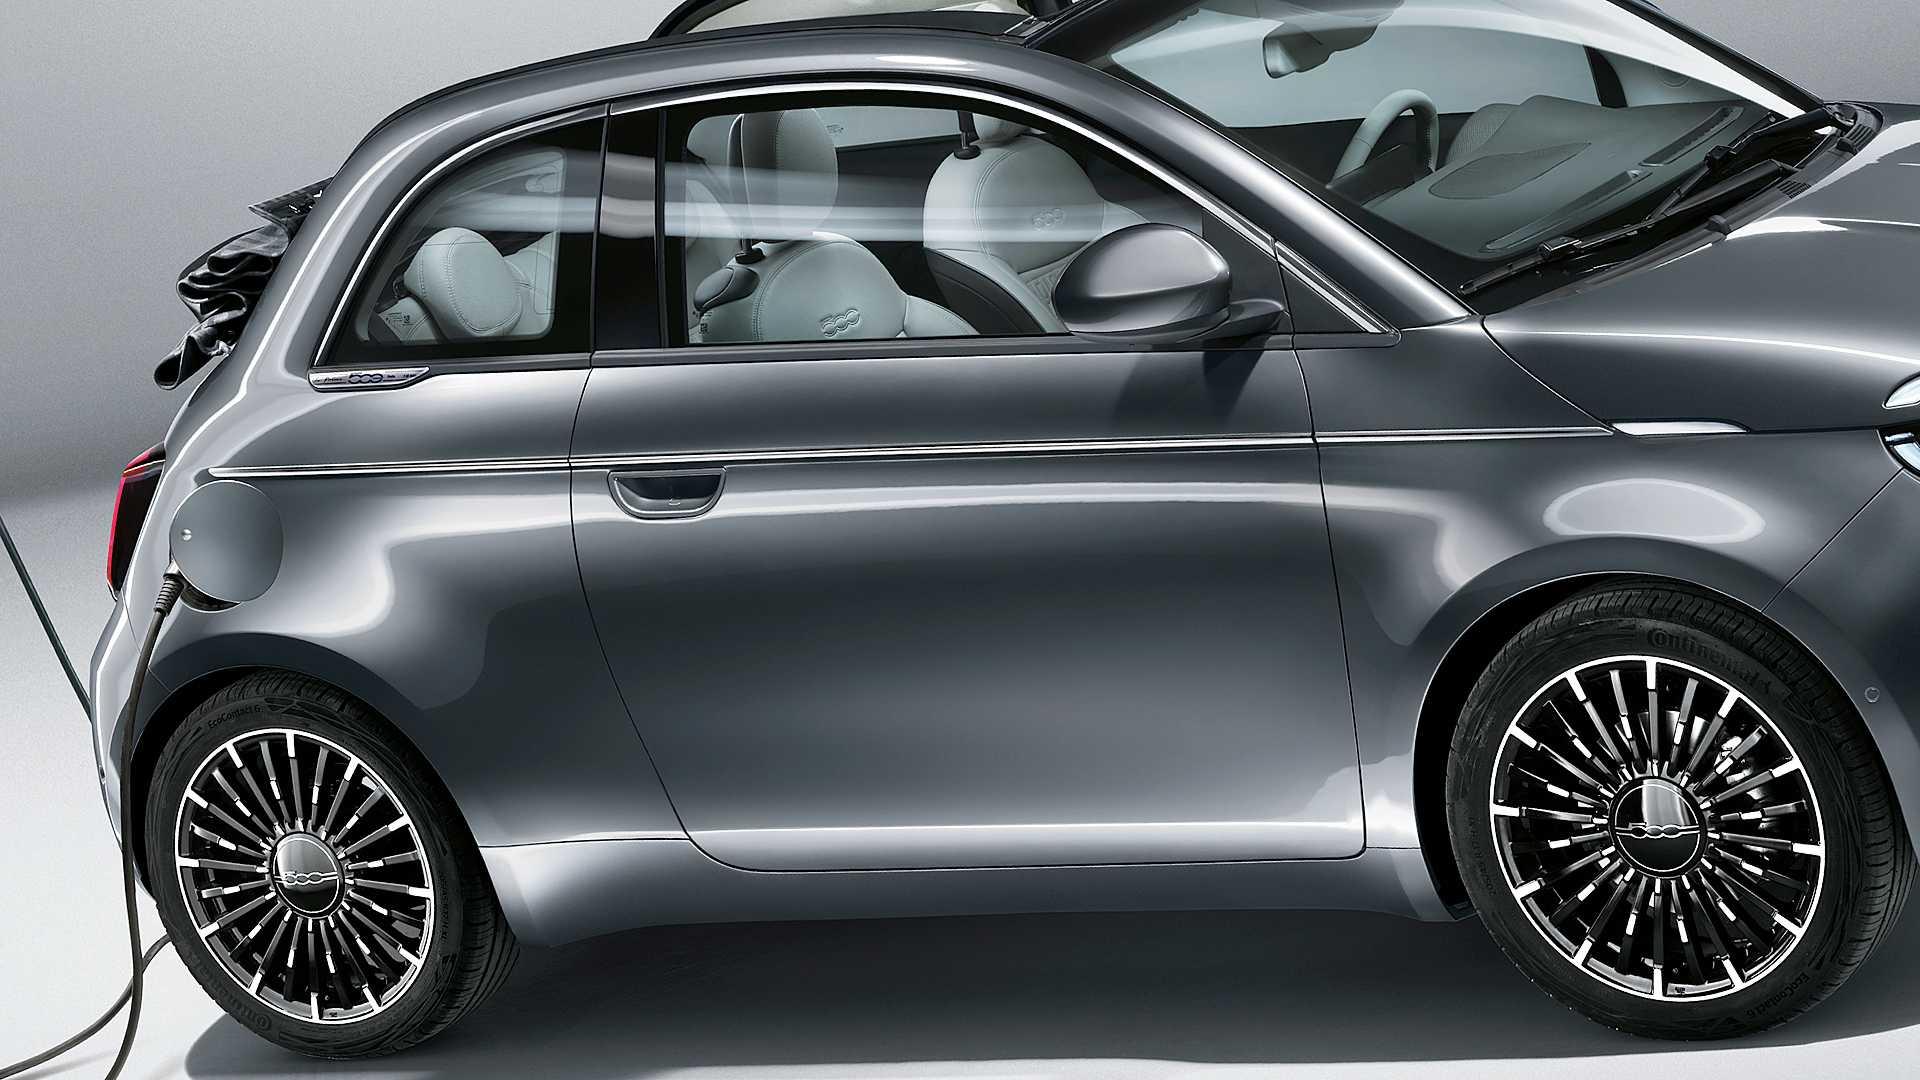 สามประตูเปิดประทุน! Fiat 500e 2021 รถไซส์เล็กพลังไฟฟ้าเคาะราคาเพียงล้านเศษ